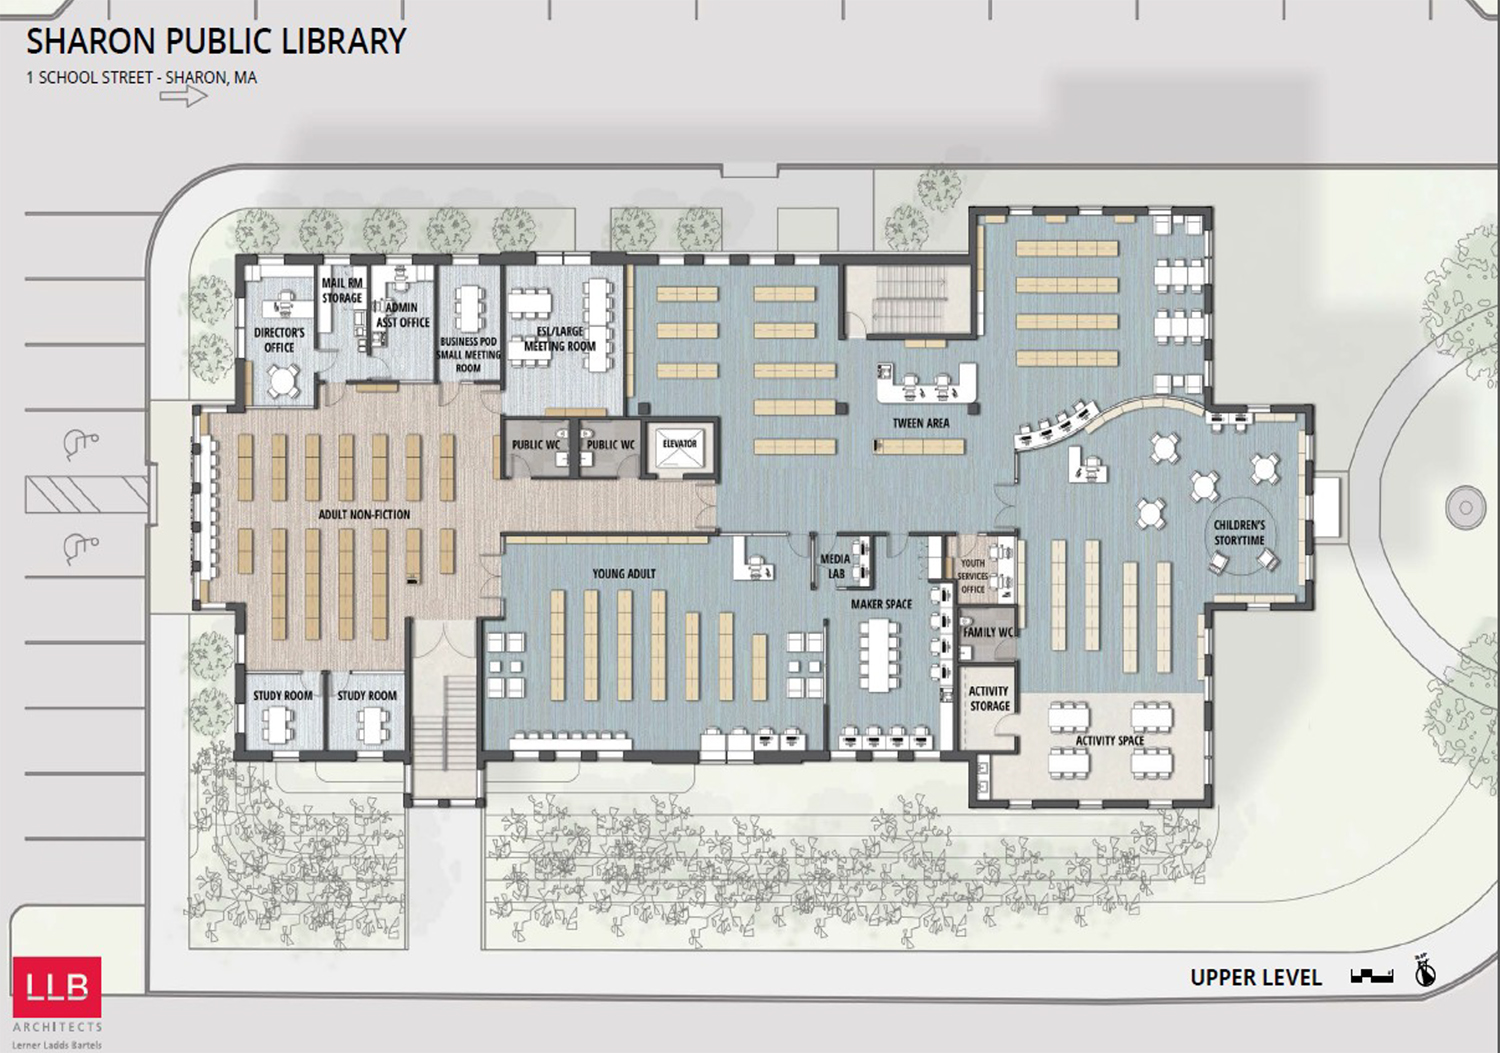 План библиотеки в школе. План публичной библиотеки. Библиотека планировка здания. Проект библиотеки планировка. План 1 этажа библиотеки.